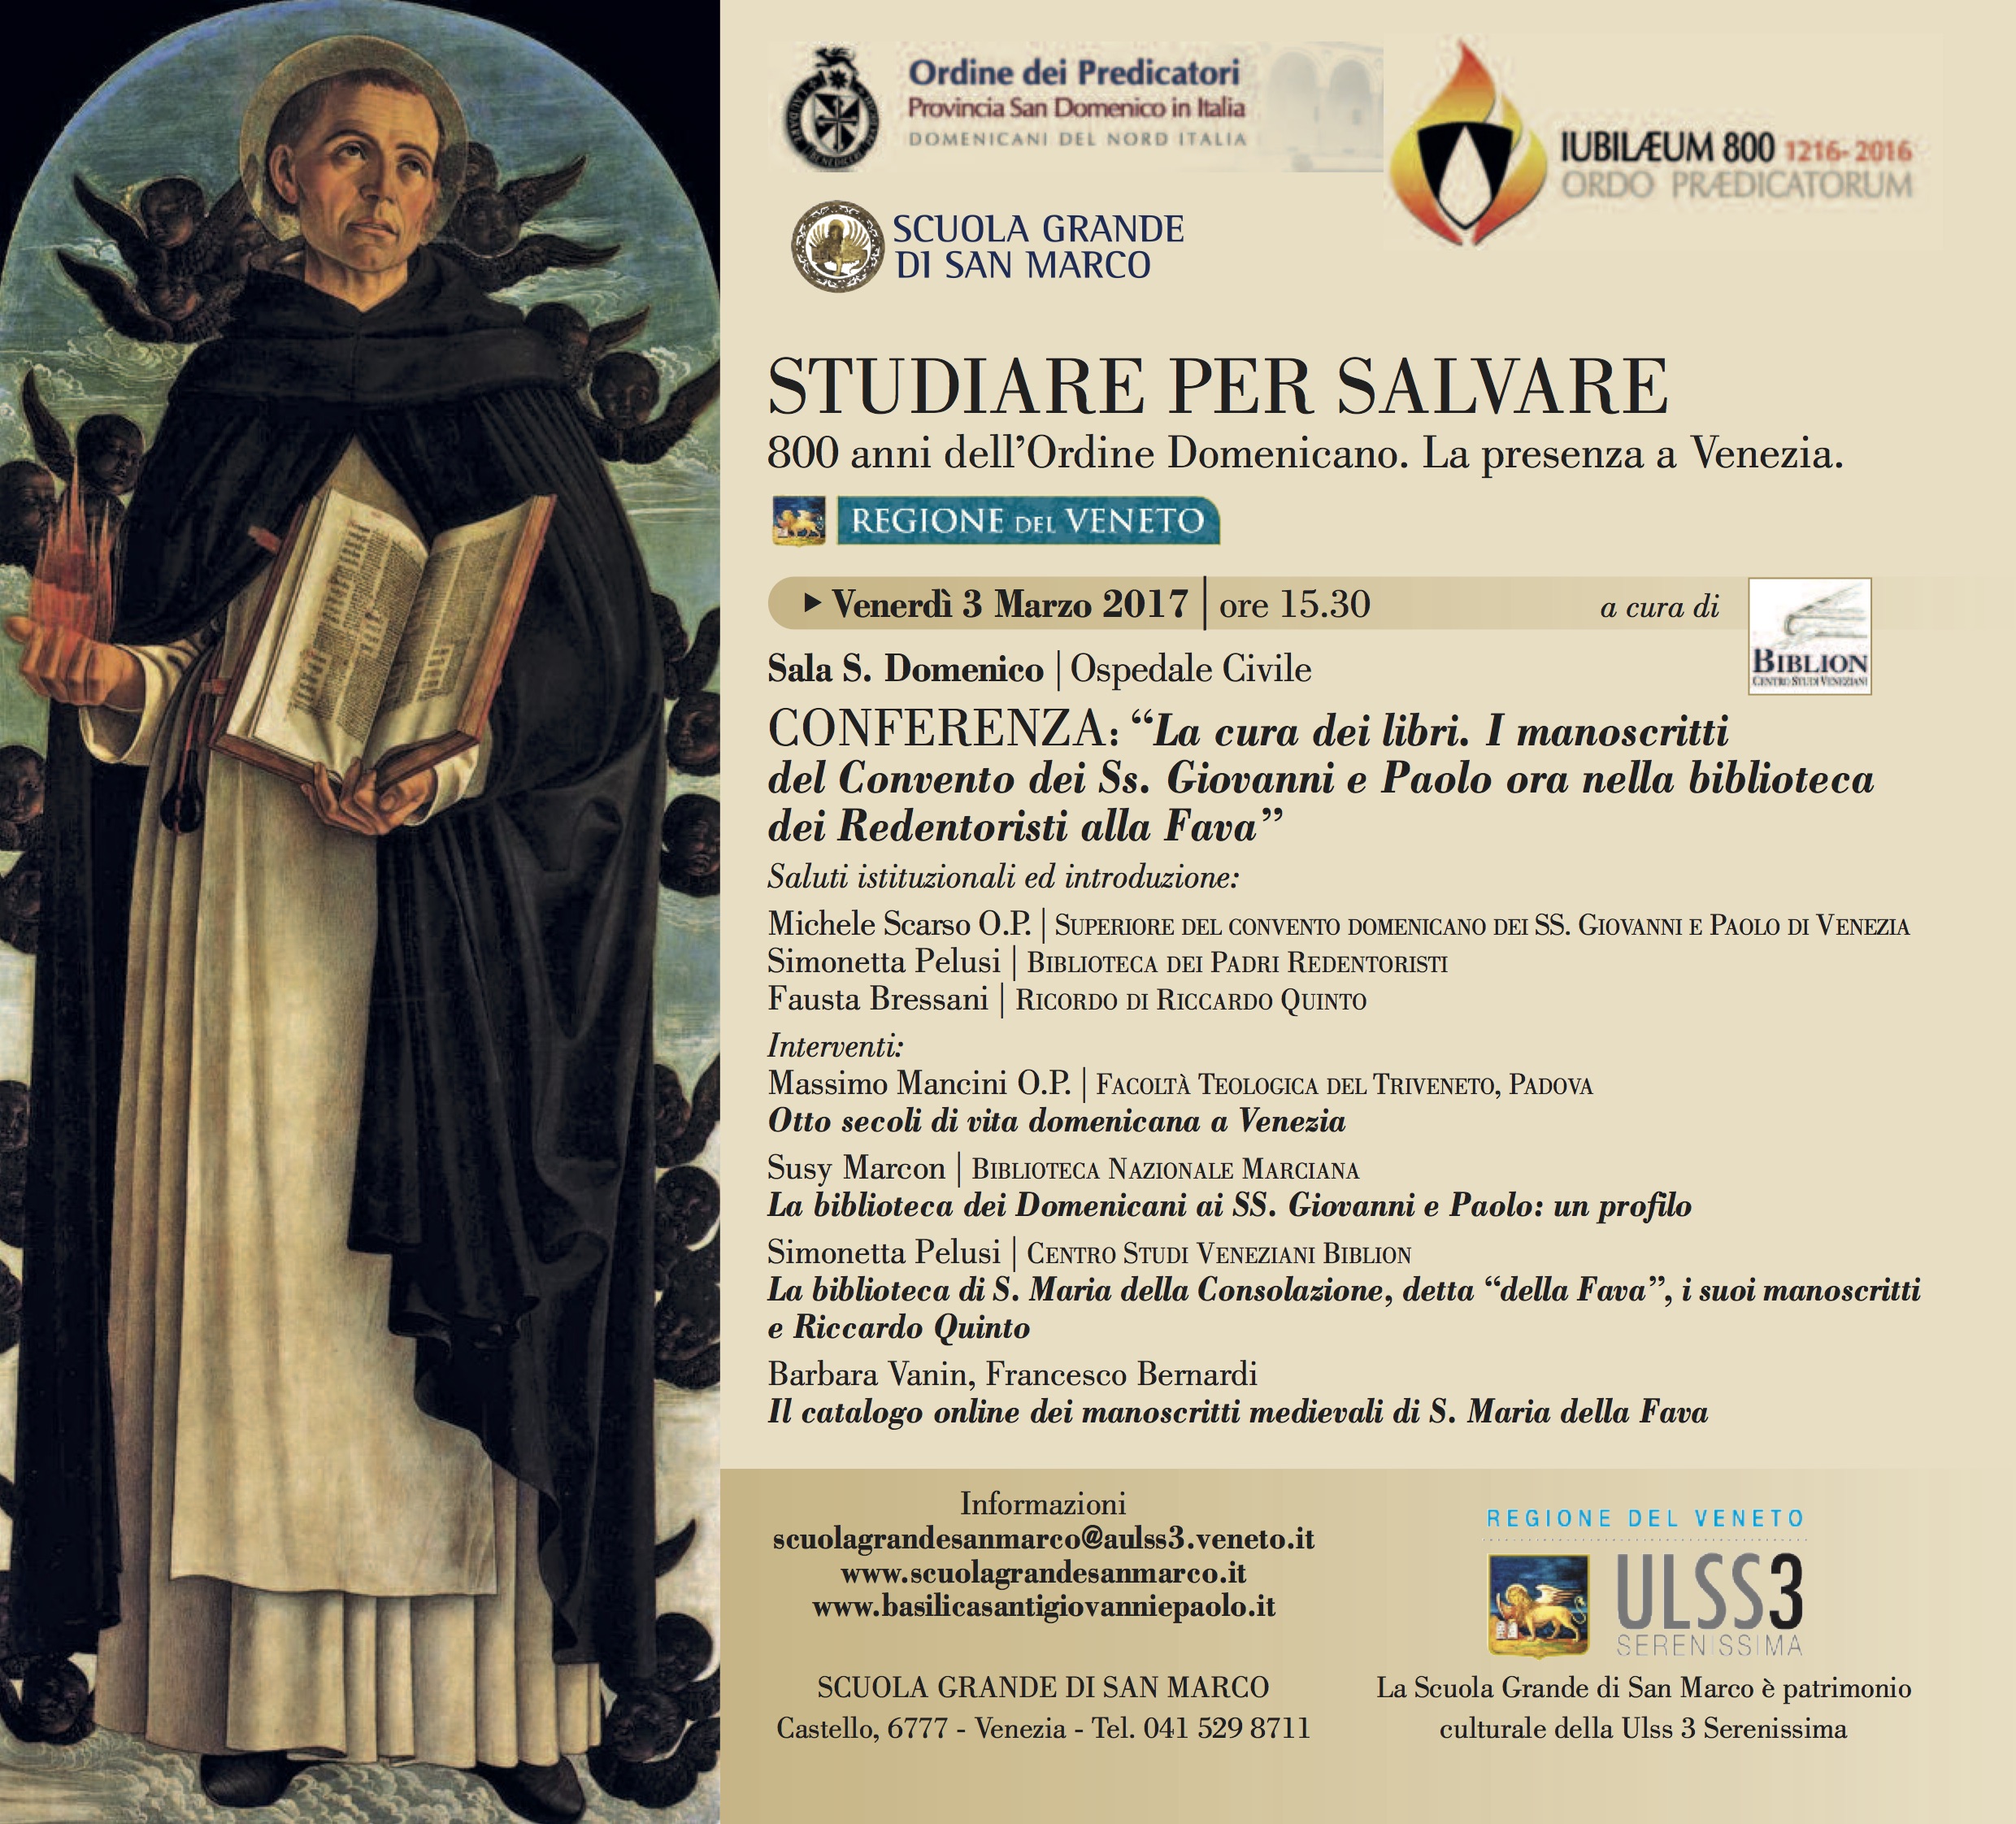 STUDIARE PER SALVARE, 800 anni dell’Ordine Domenicano. La presenza a Venezia